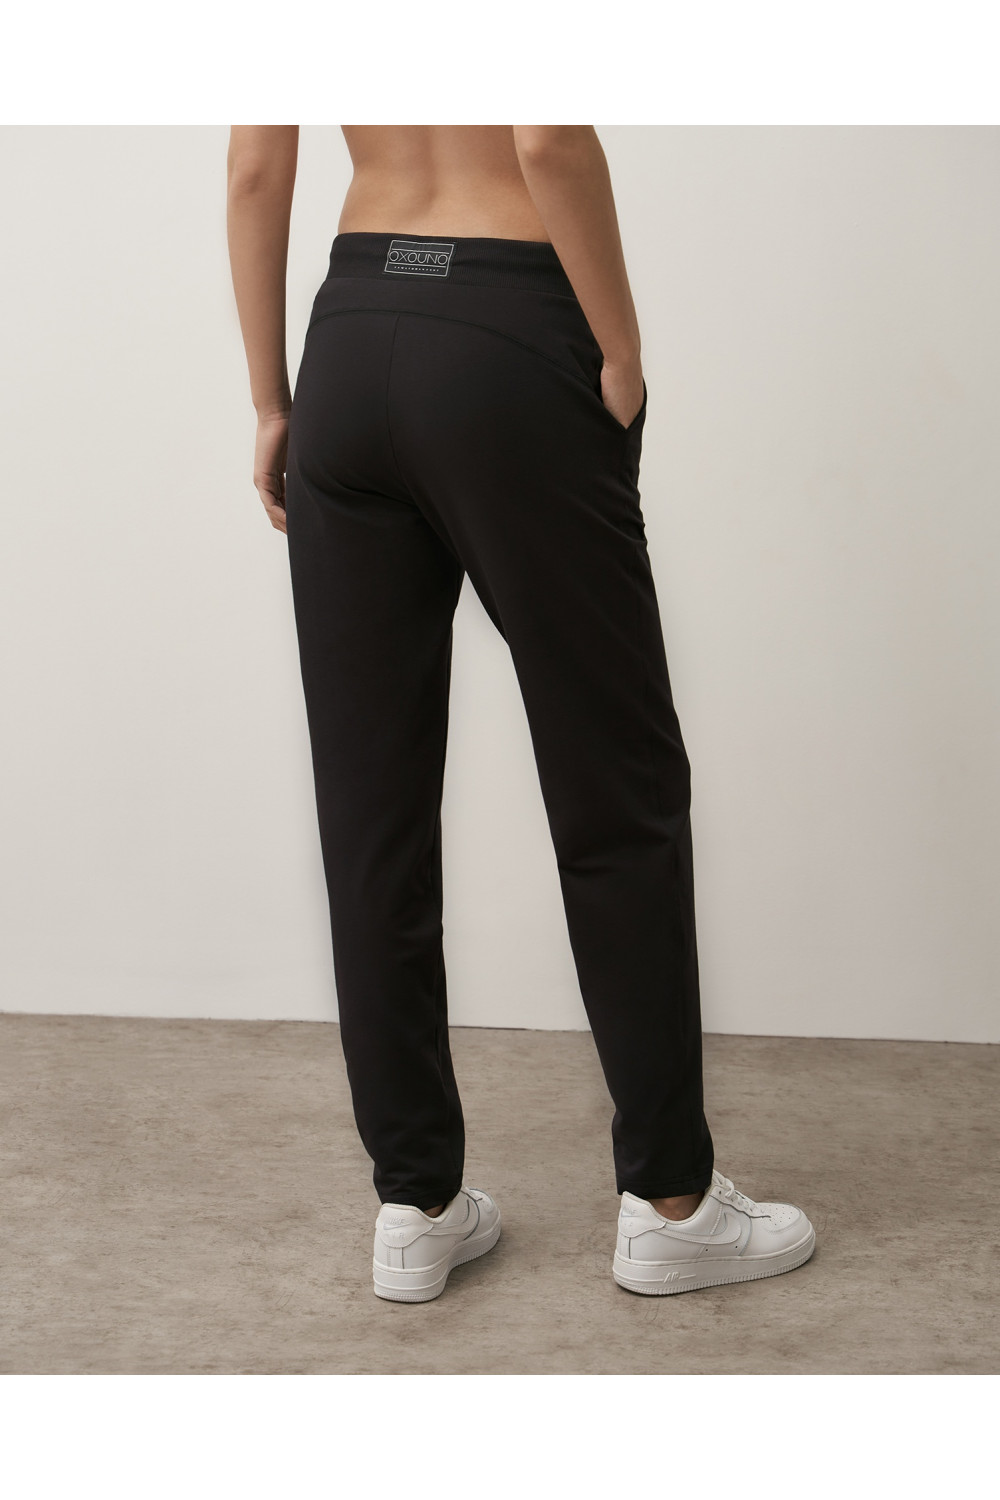 OXO-1102 (2XL)  Свободные брюки с кокеткой женские. модель 2, коллекция COMFY SPORT, OXO UNO